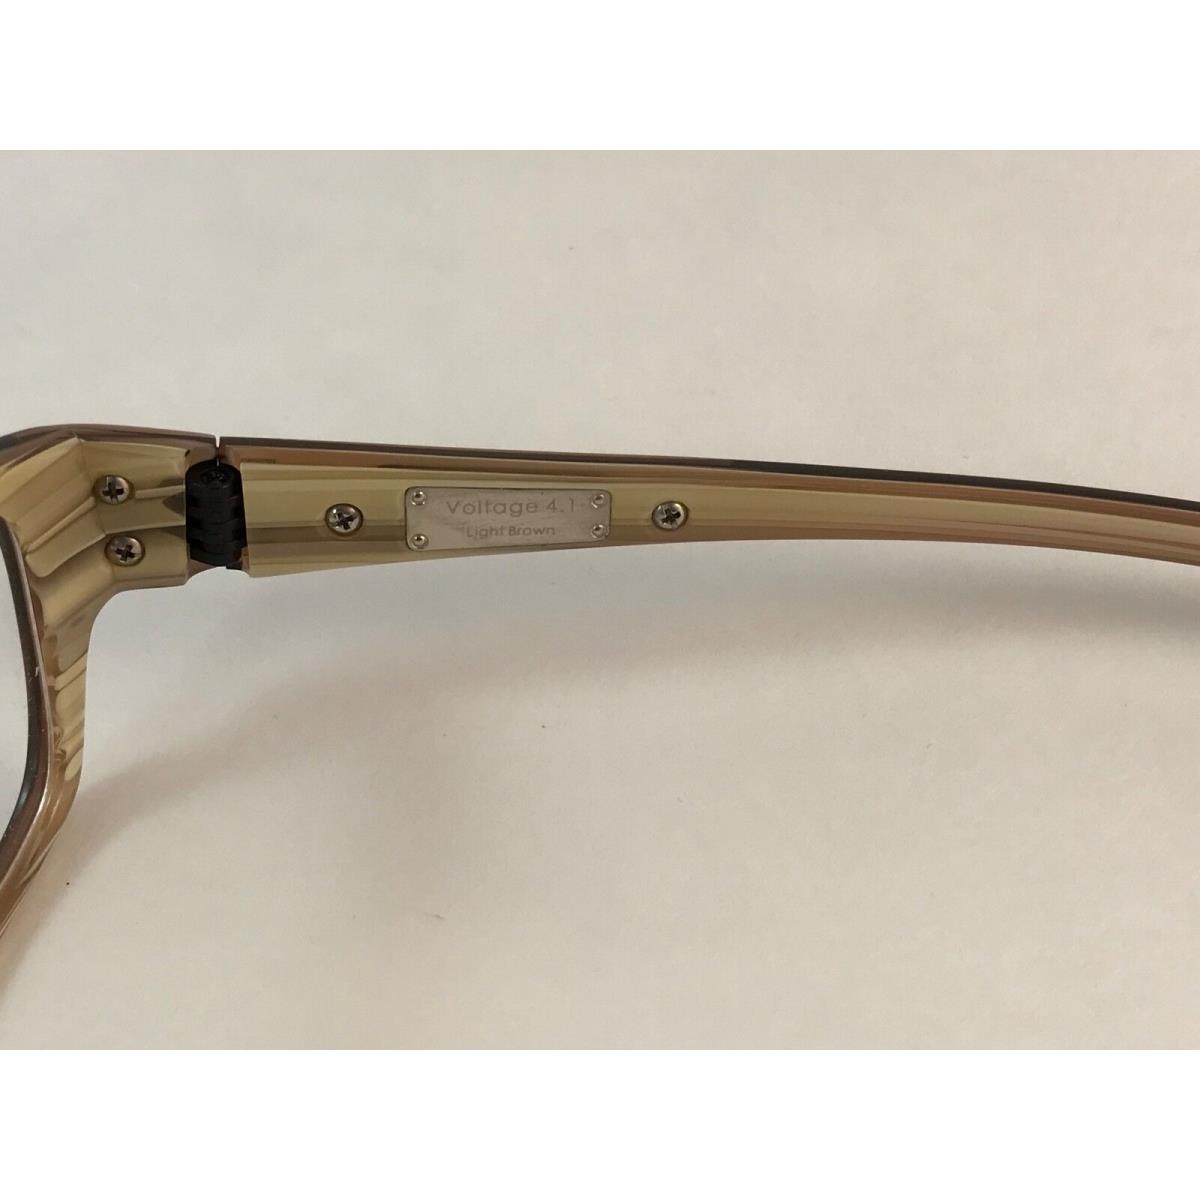 Oakley eyeglasses Voltage - light brown Frame